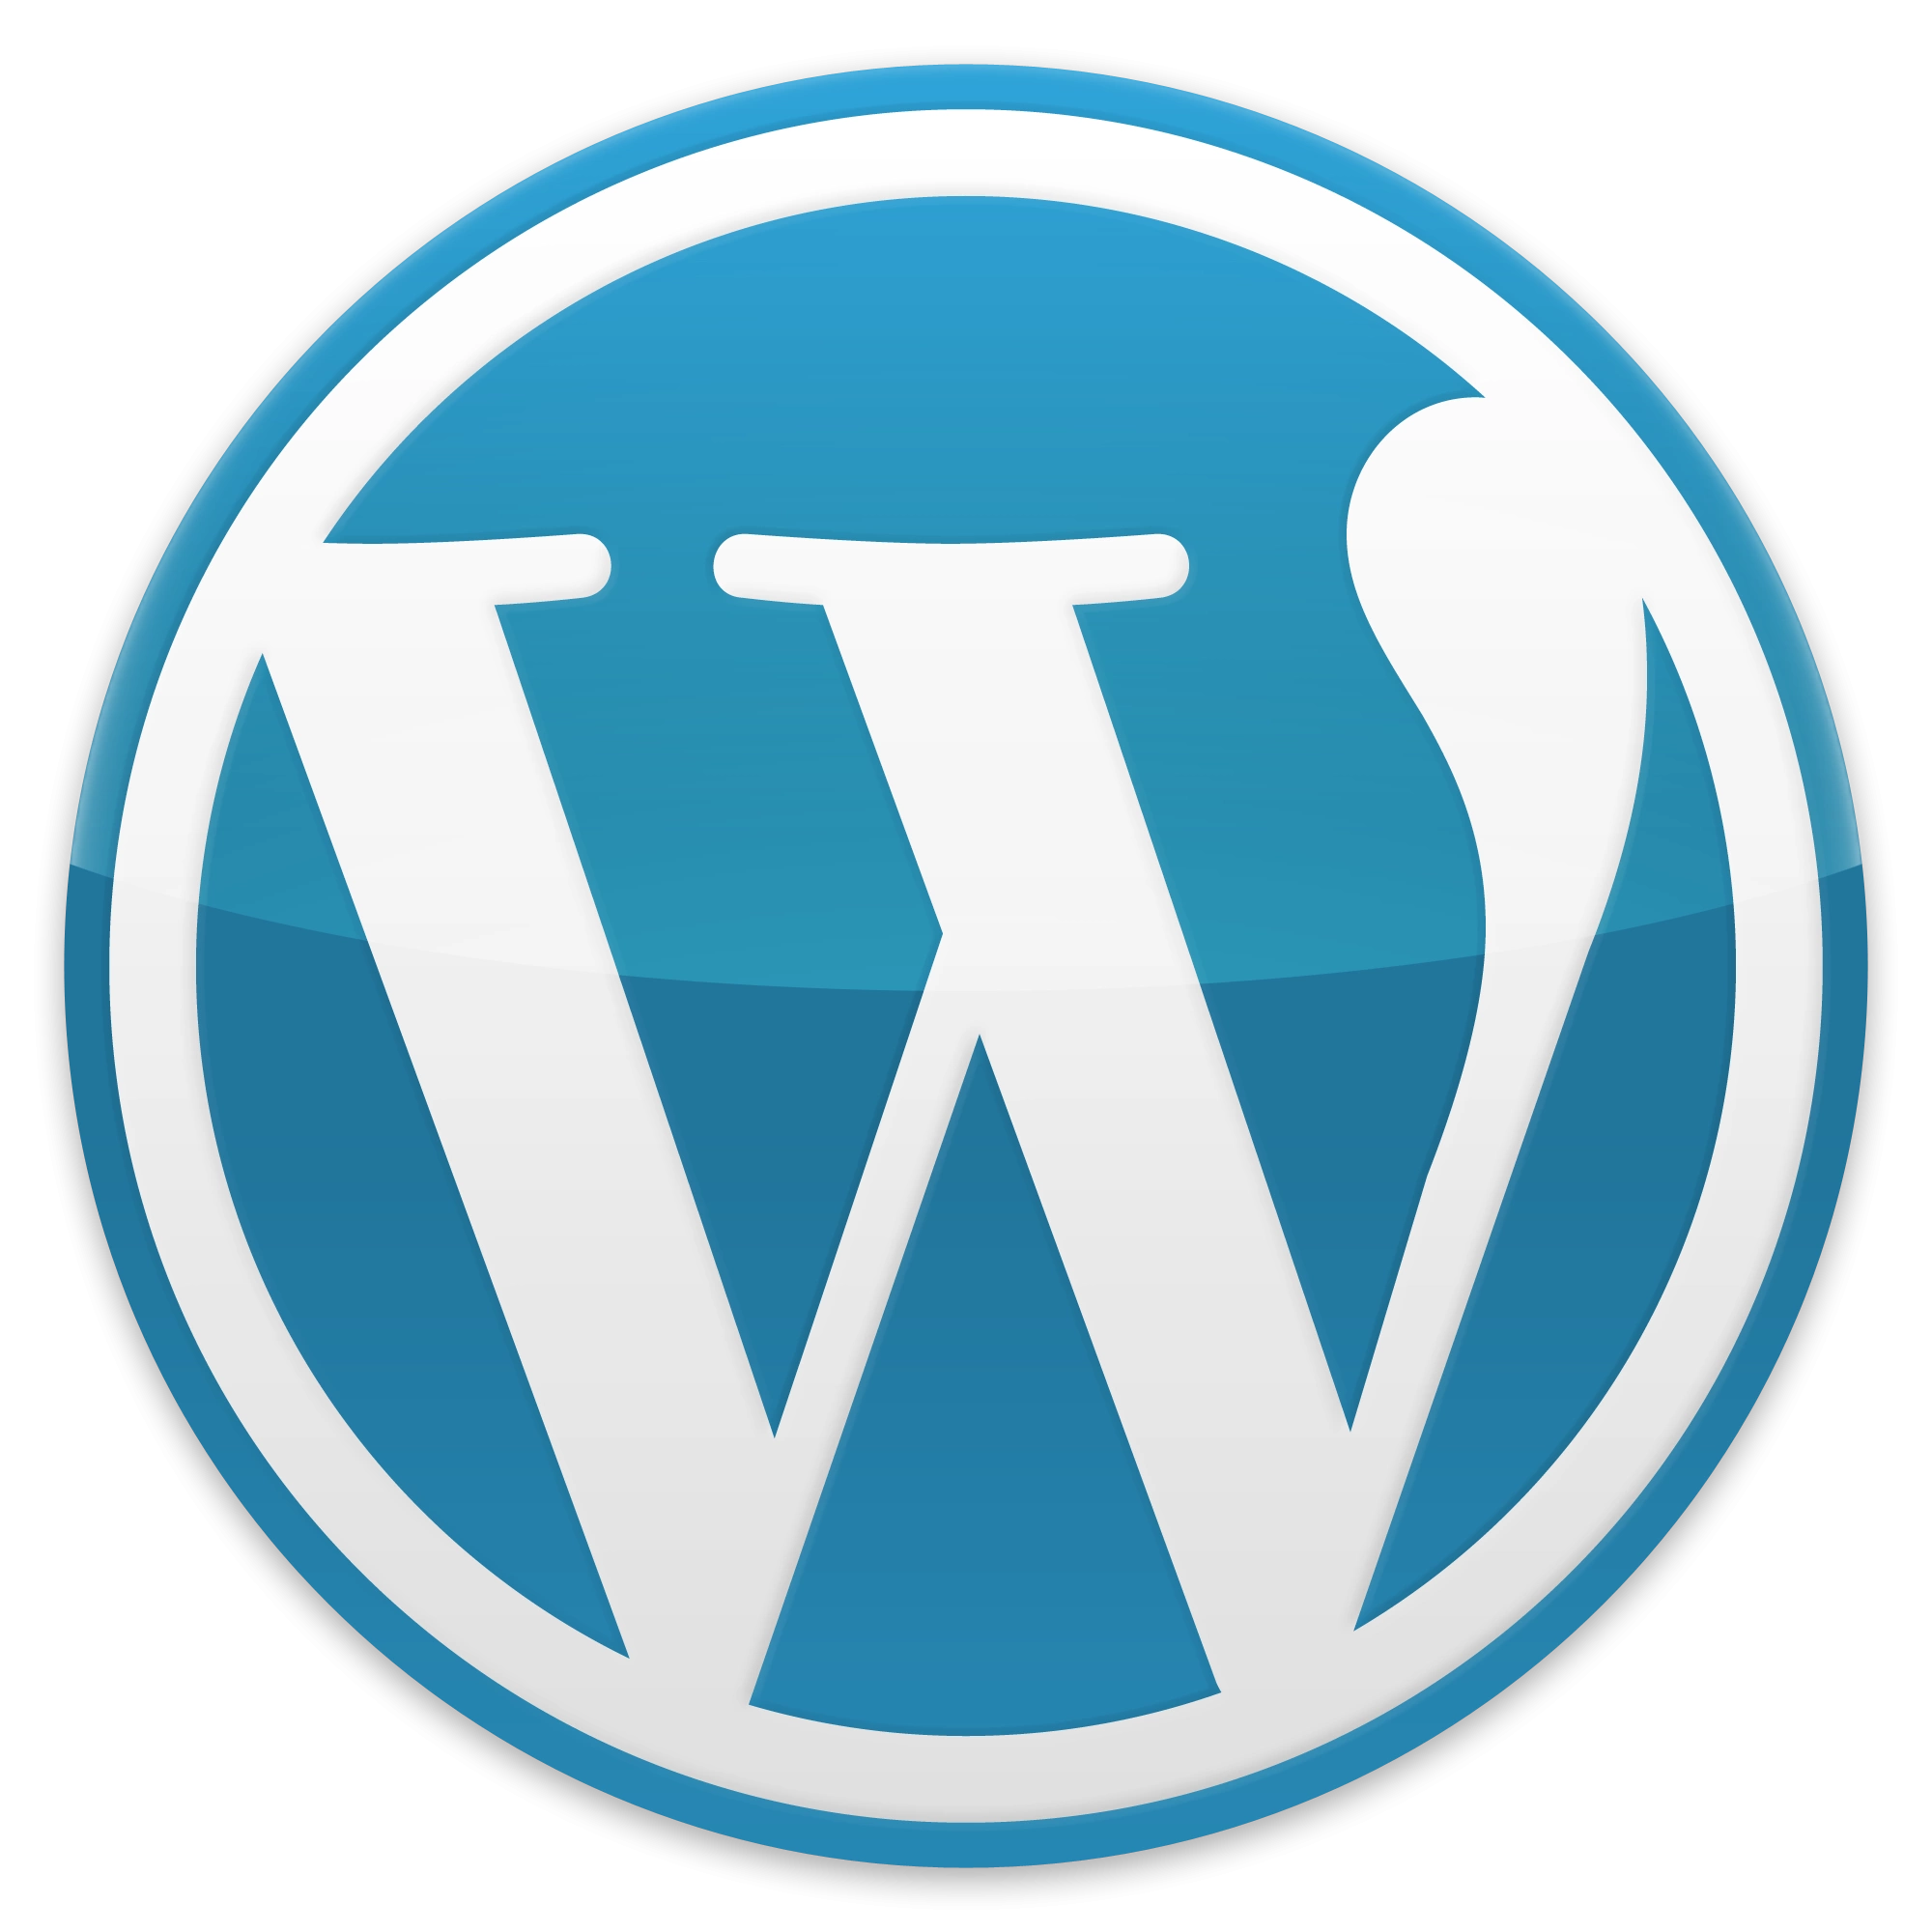 логотип WordPress